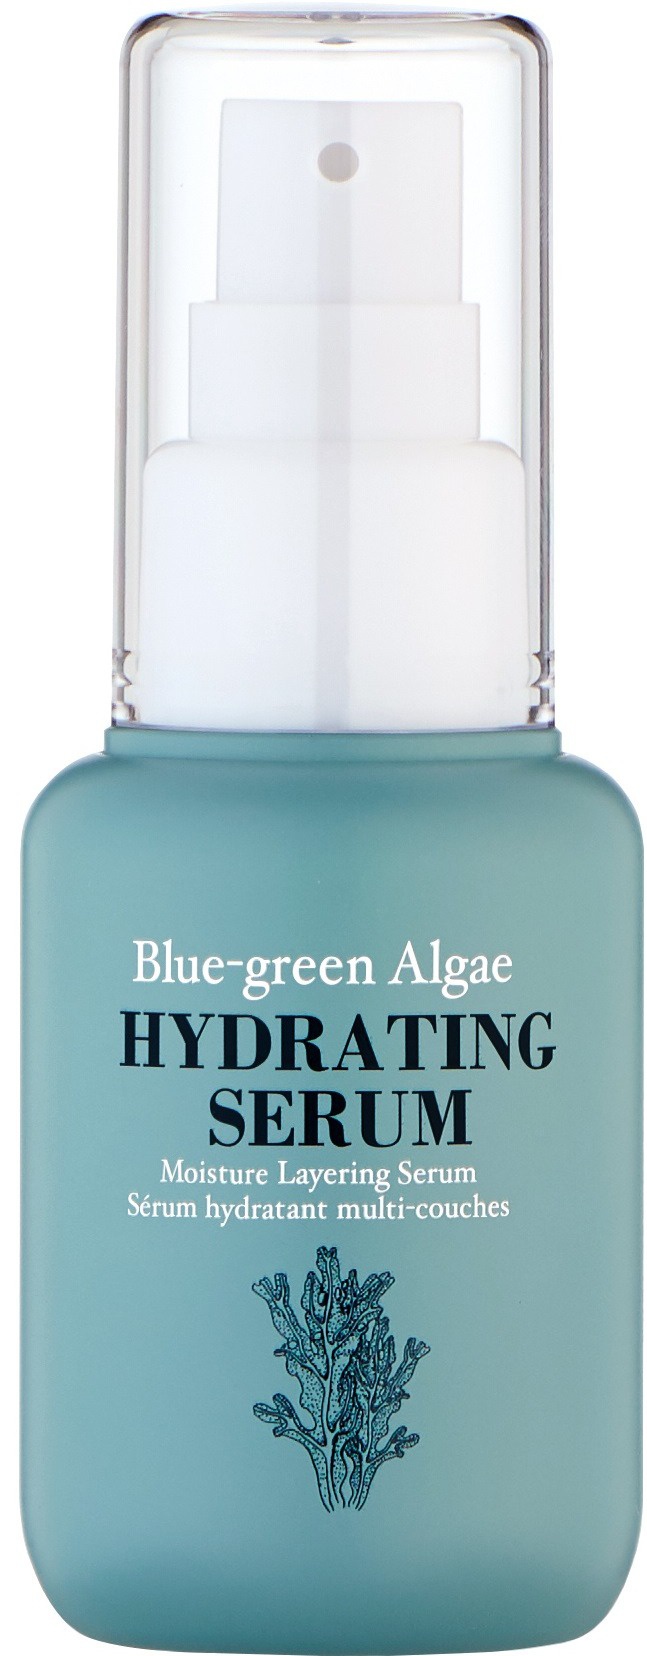 Too Cool For School Blue-green Algae Hydrating Serum